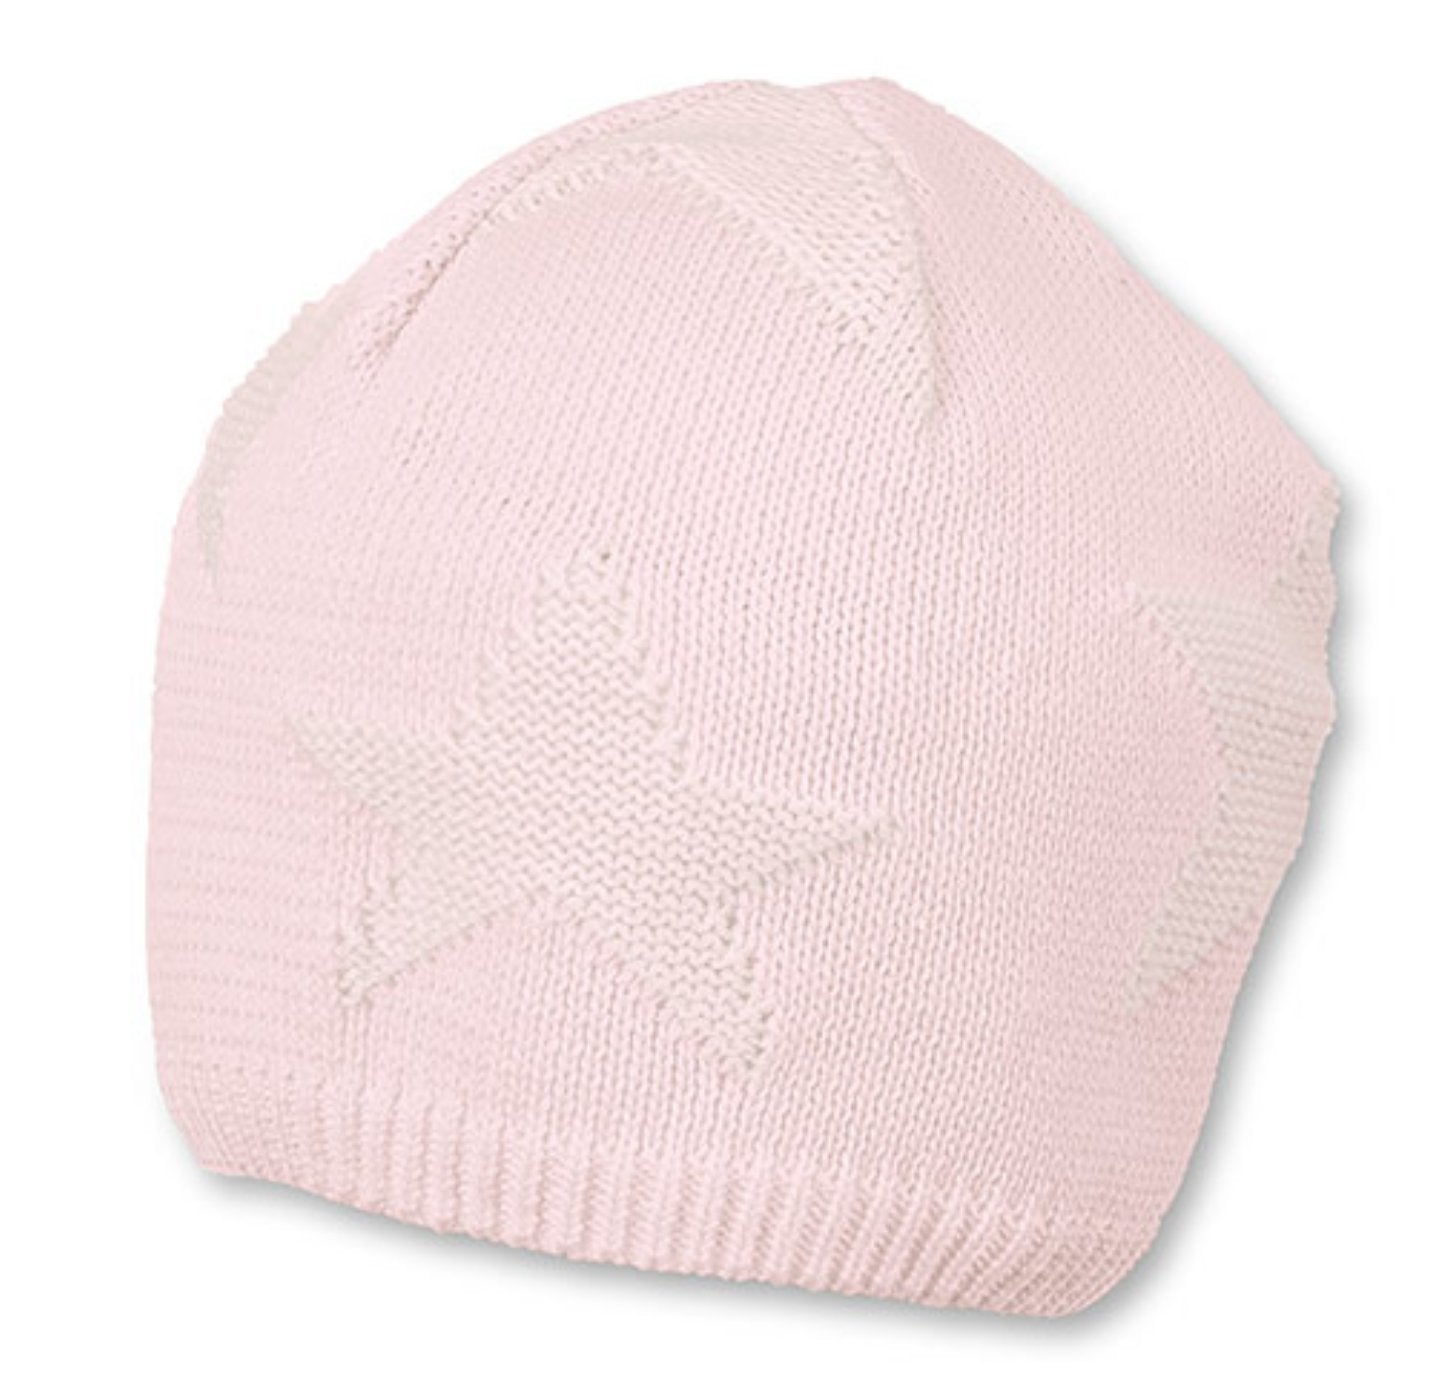 Baby gestrickte Mütze grau rosa Sterntaler